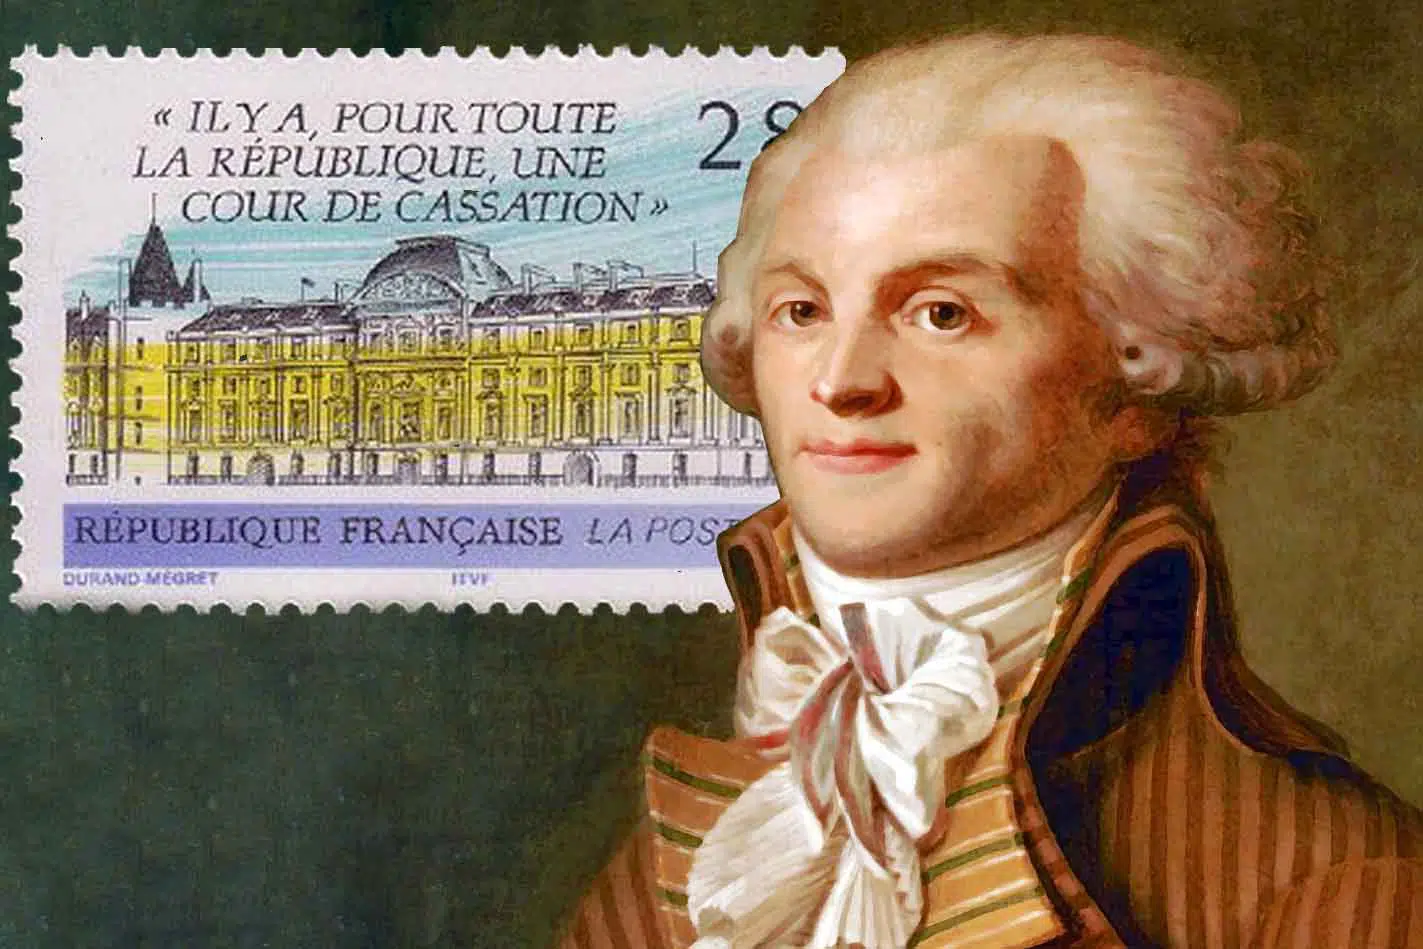 El guillotinador Robespierre fue el inventor del Tribunal de Casación, que después emuló toda Europa salvo Gran Bretaña